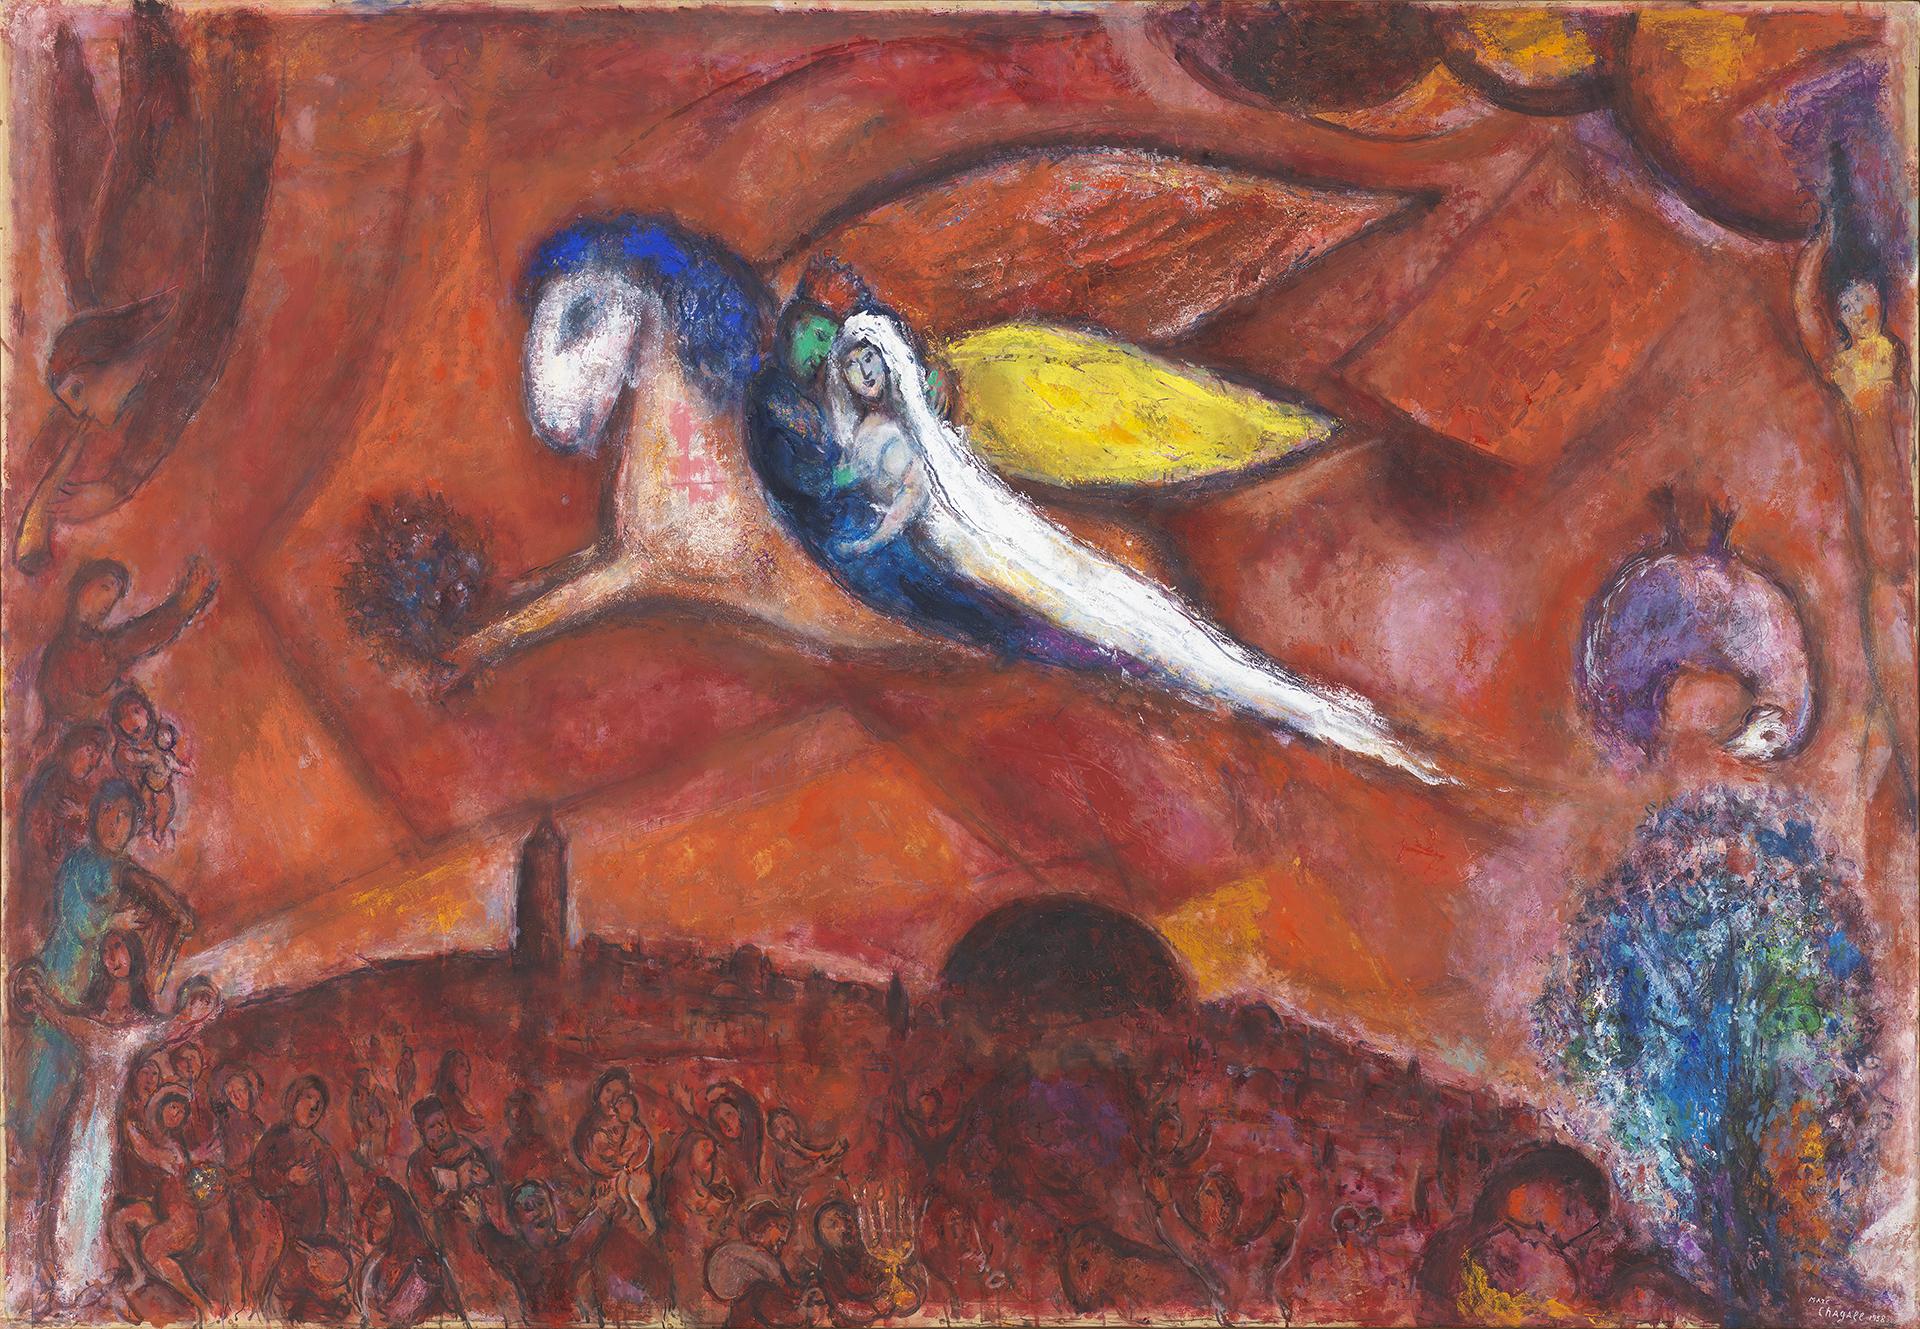  Marc Chagall, Le Cantique des Cantiques IV (détail), huile sur papier marouflé sur toile, 1958, musée national Marc Chagall, Nice. Photo : RMN-GP. (c) ADAGP, Paris, 2020. © 